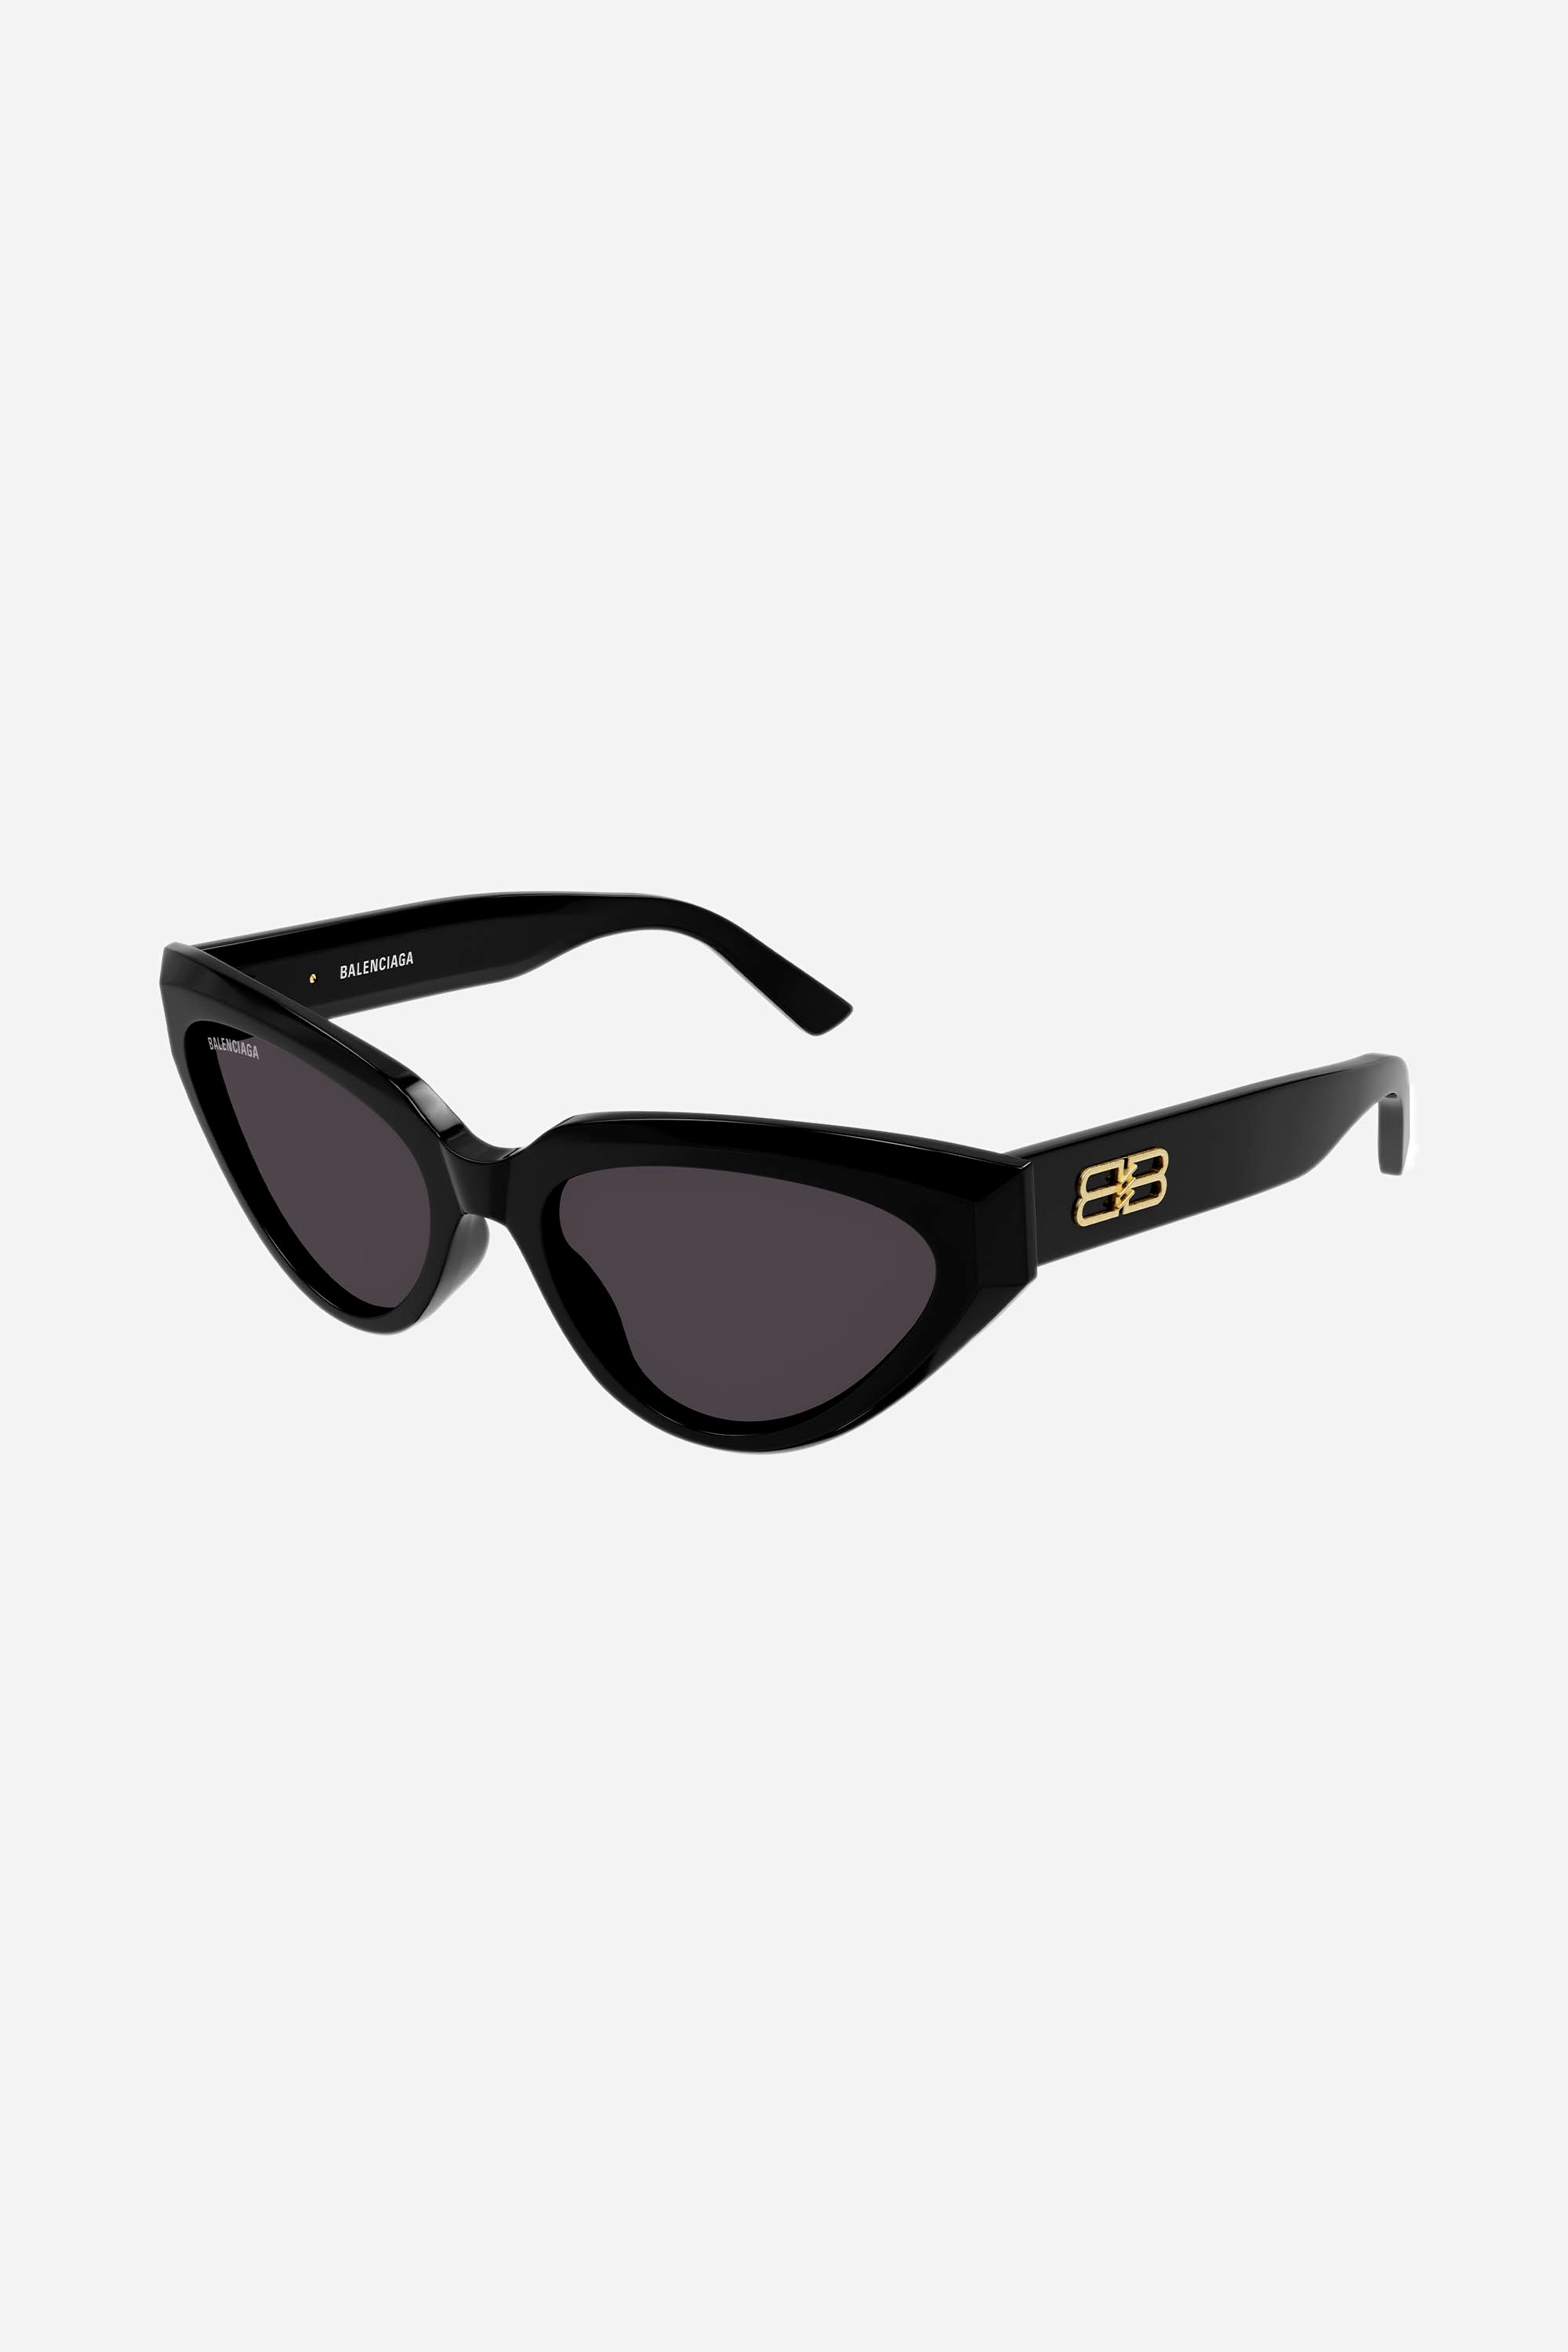 Balenciaga black cat-eye sunglasses with BB logo - Eyewear Club